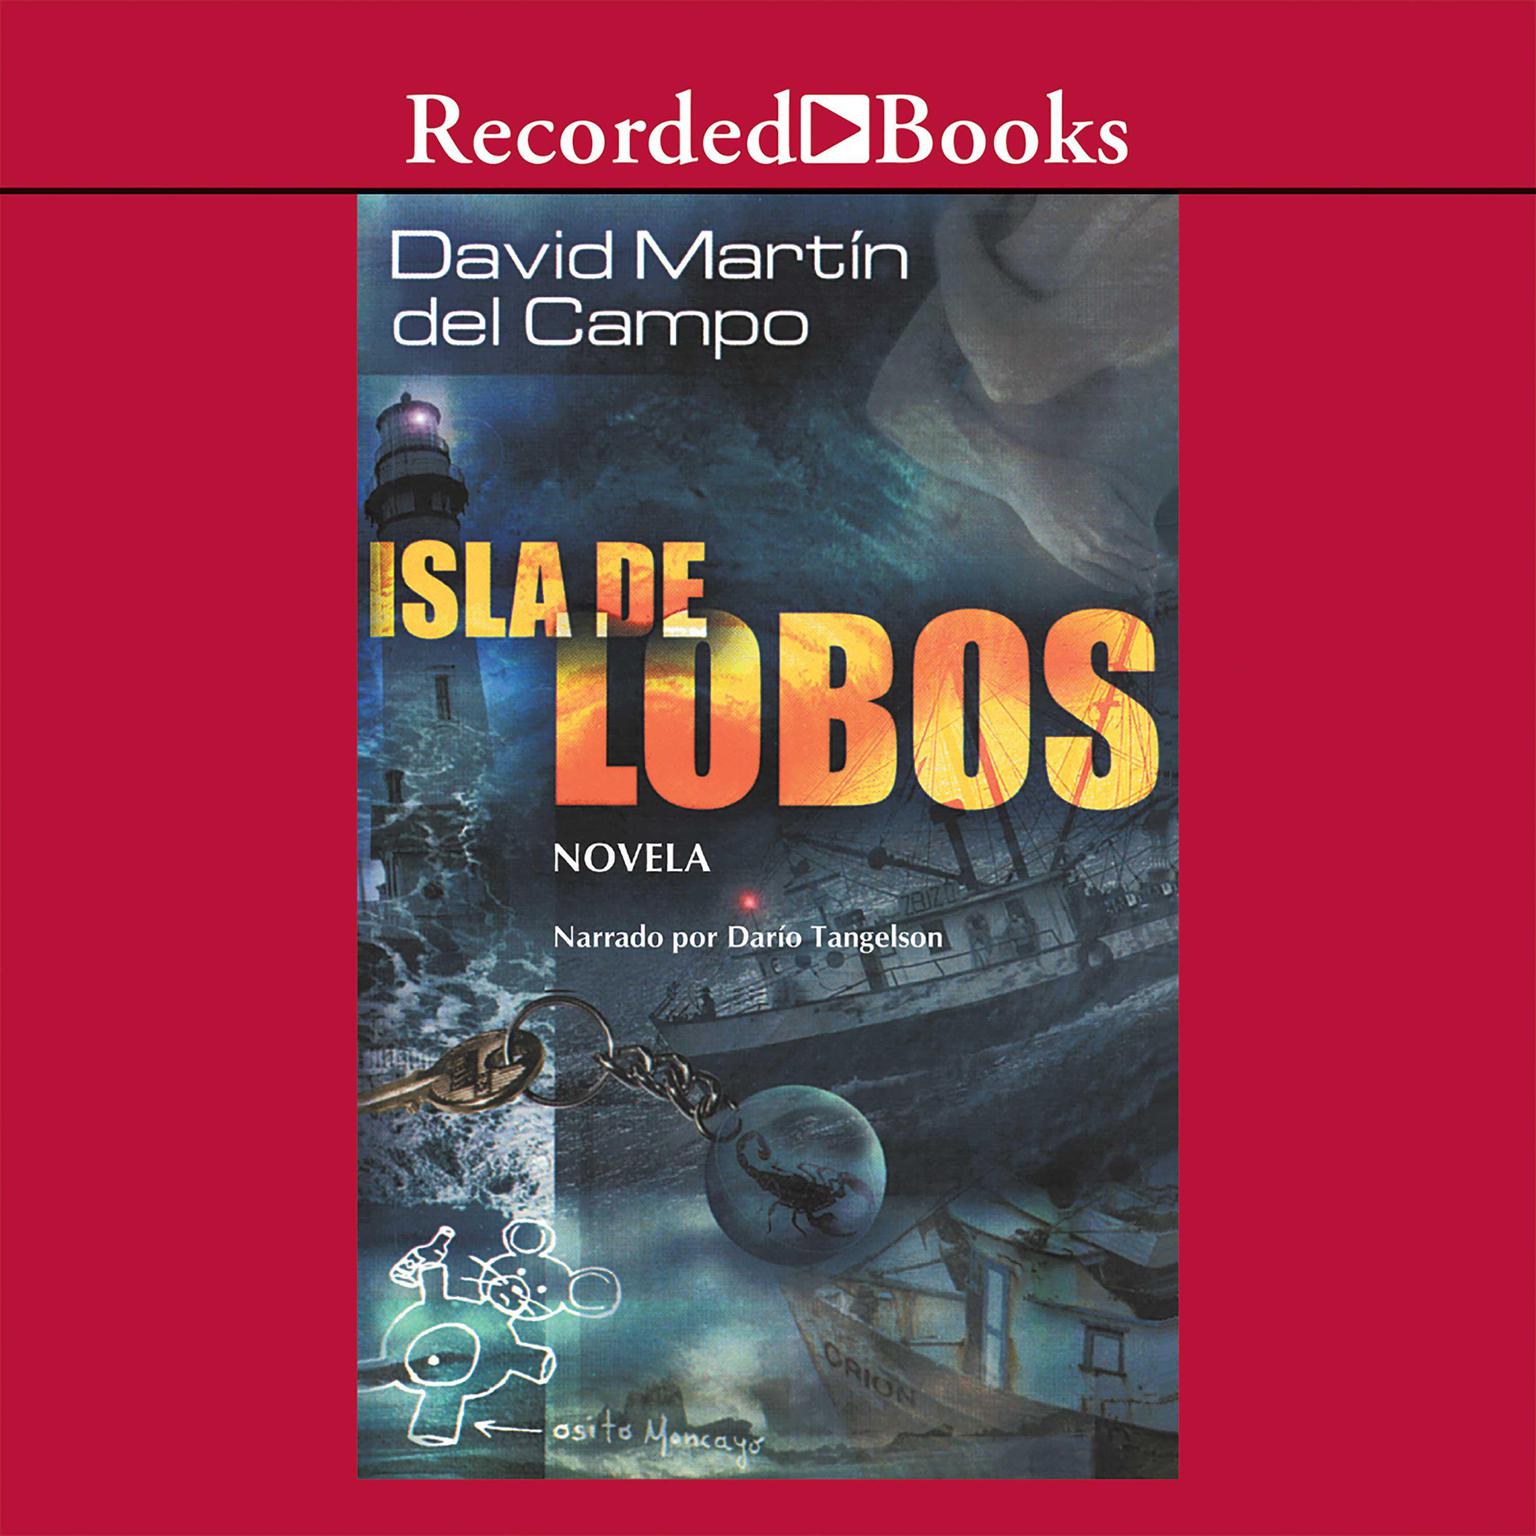 Isla de lobos (Island of the Wolves) Audiobook, by David Martin Del Campo